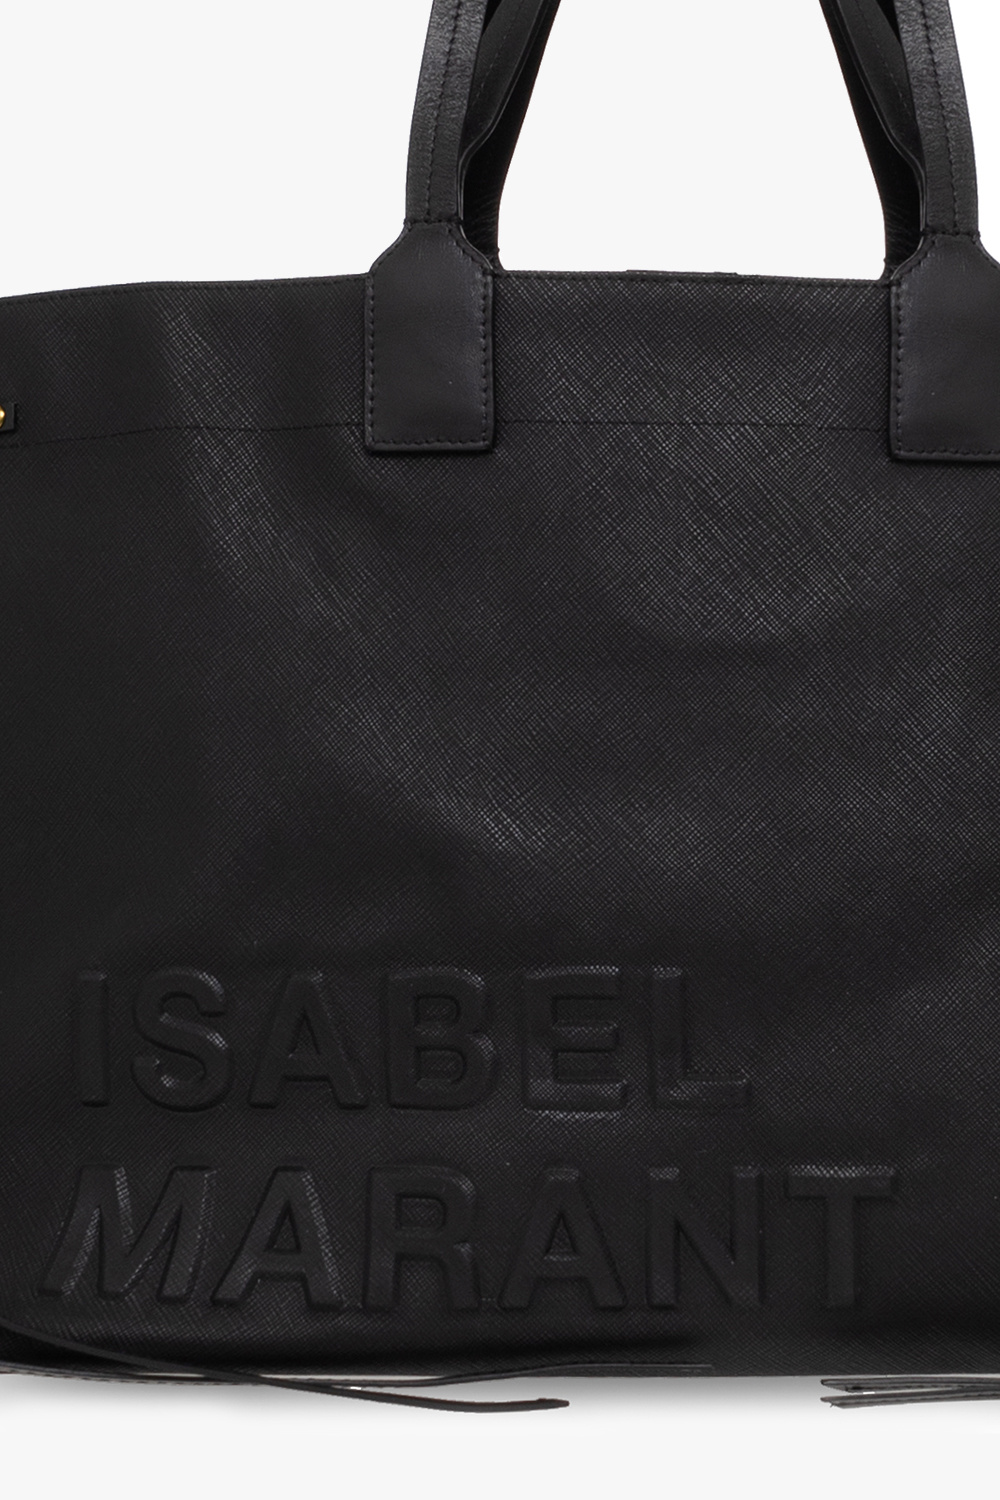 Isabel Marant ‘Wydra’ shopper drawstring bag